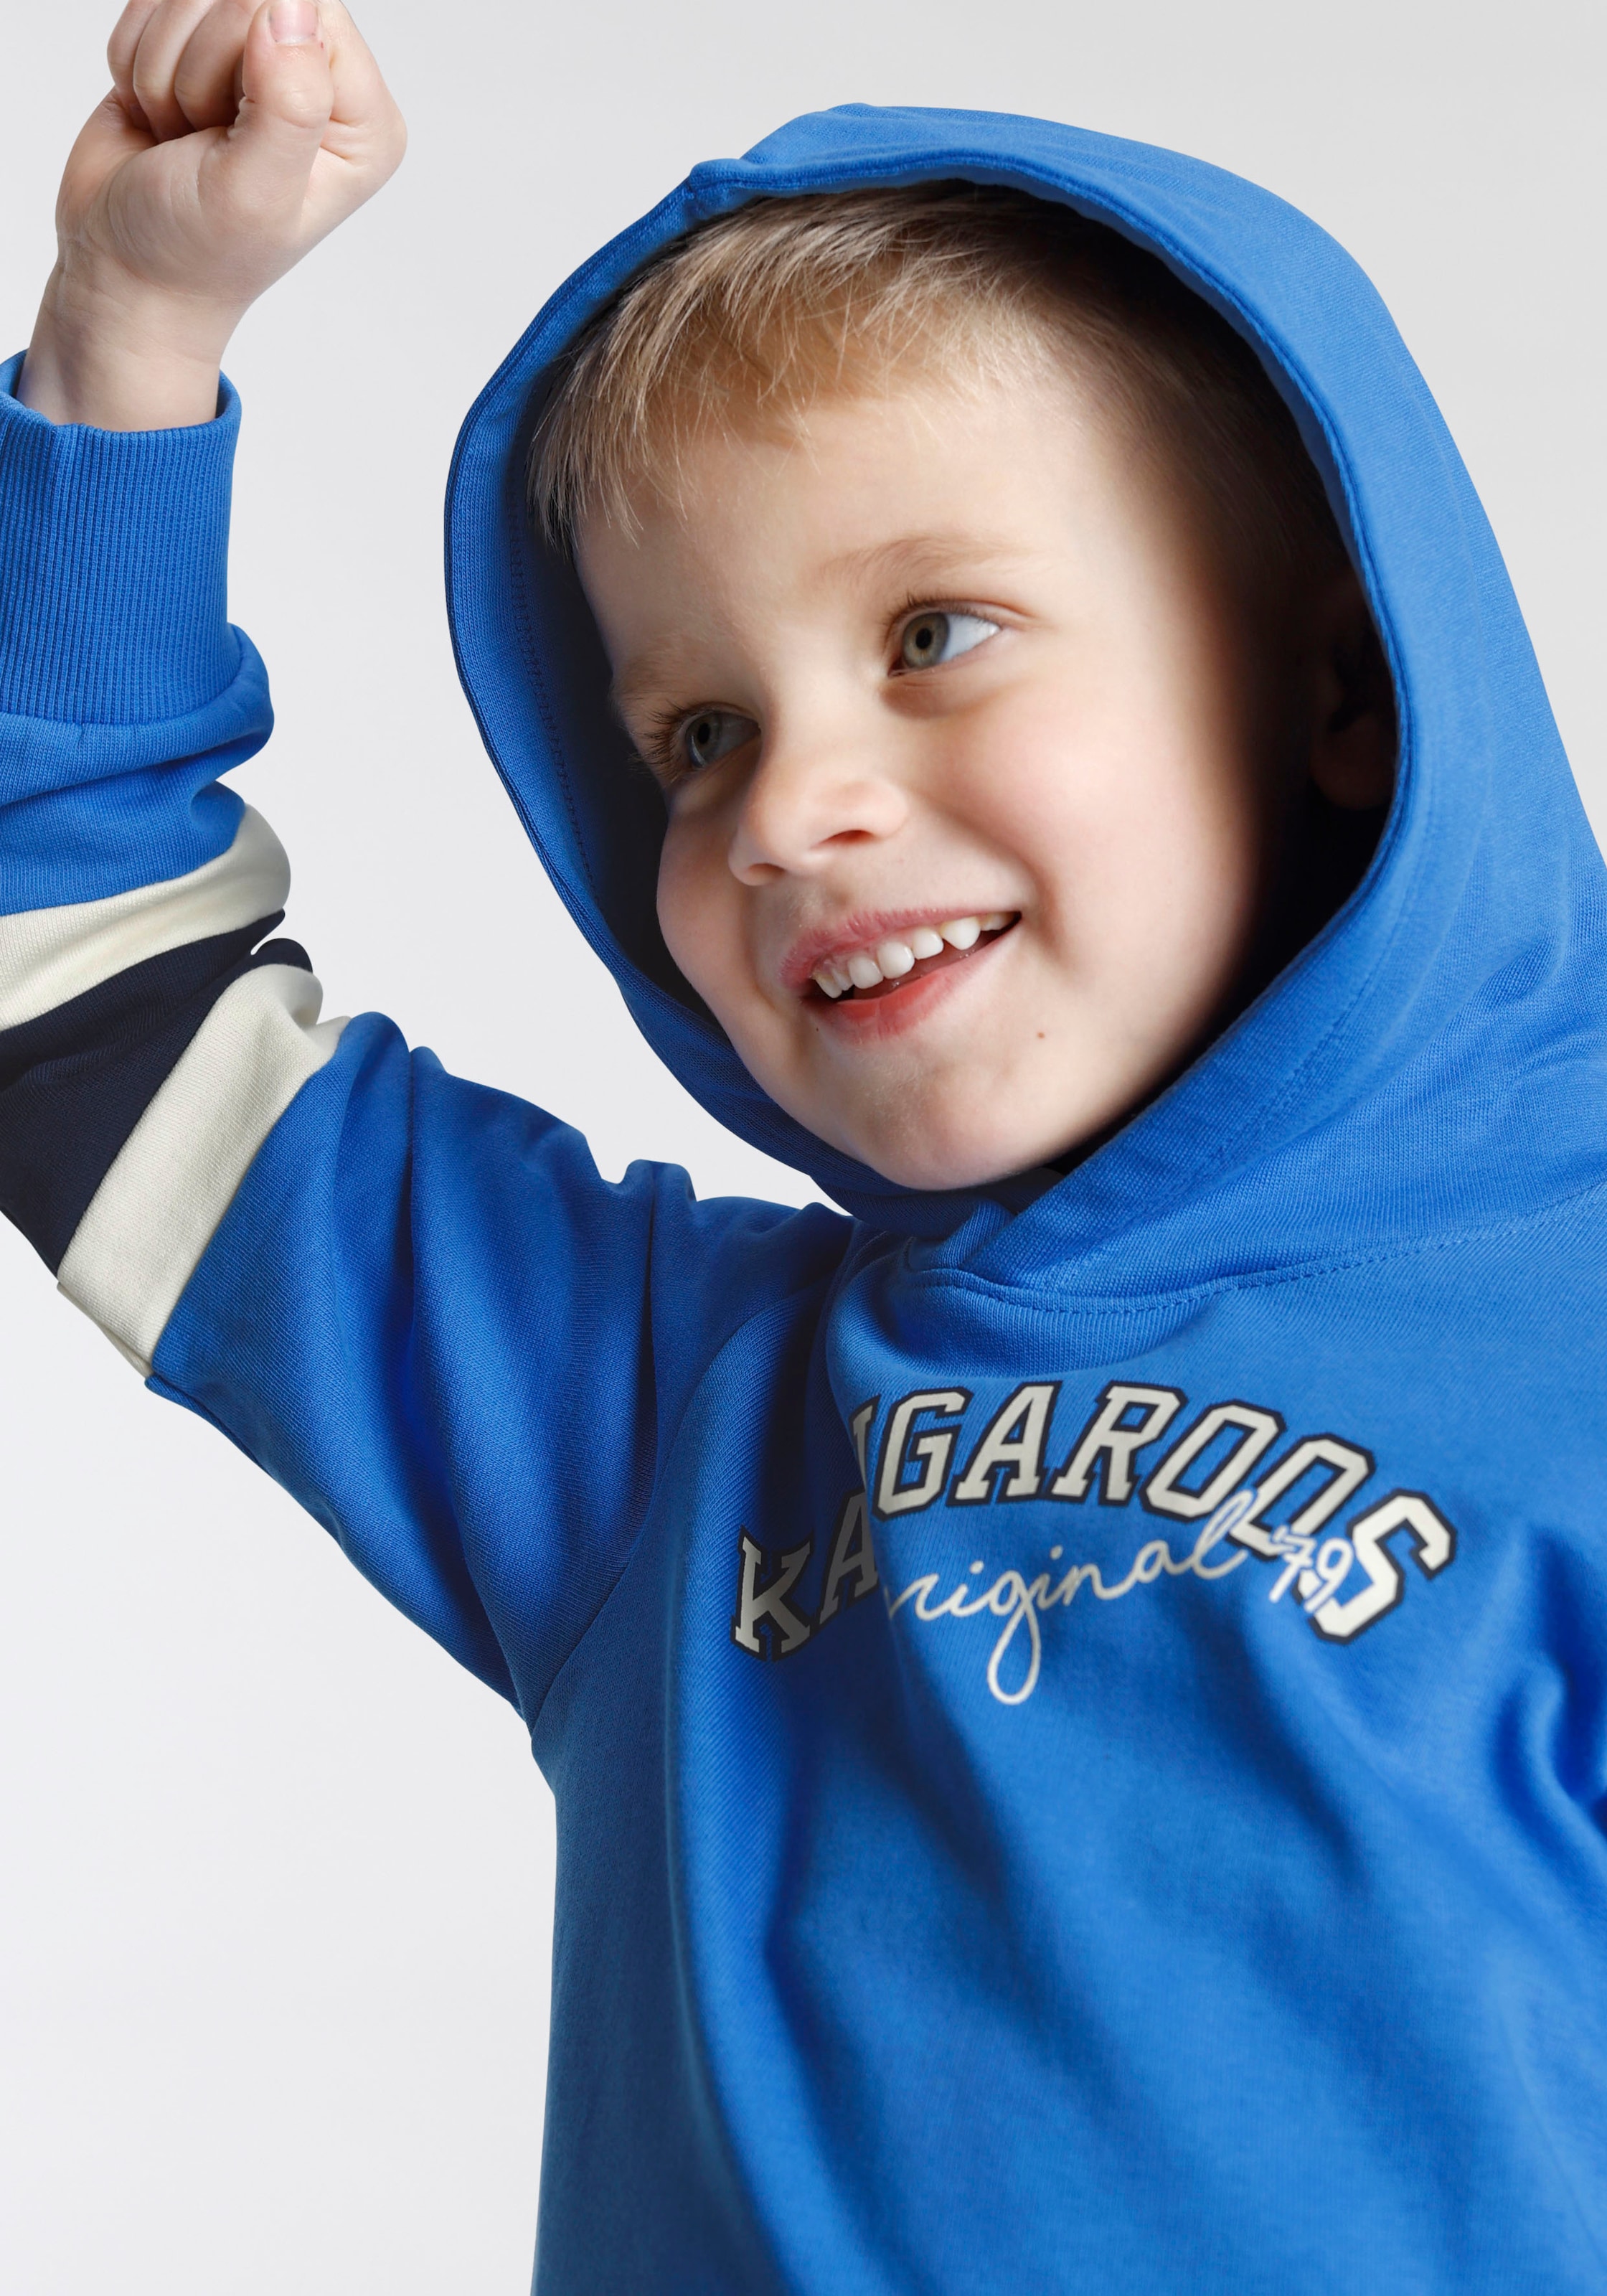 KangaROOS Kapuzensweatshirt »Colorblocking«, mit Streifen an den Ärmeln,  für Mini Jungen bei ♕